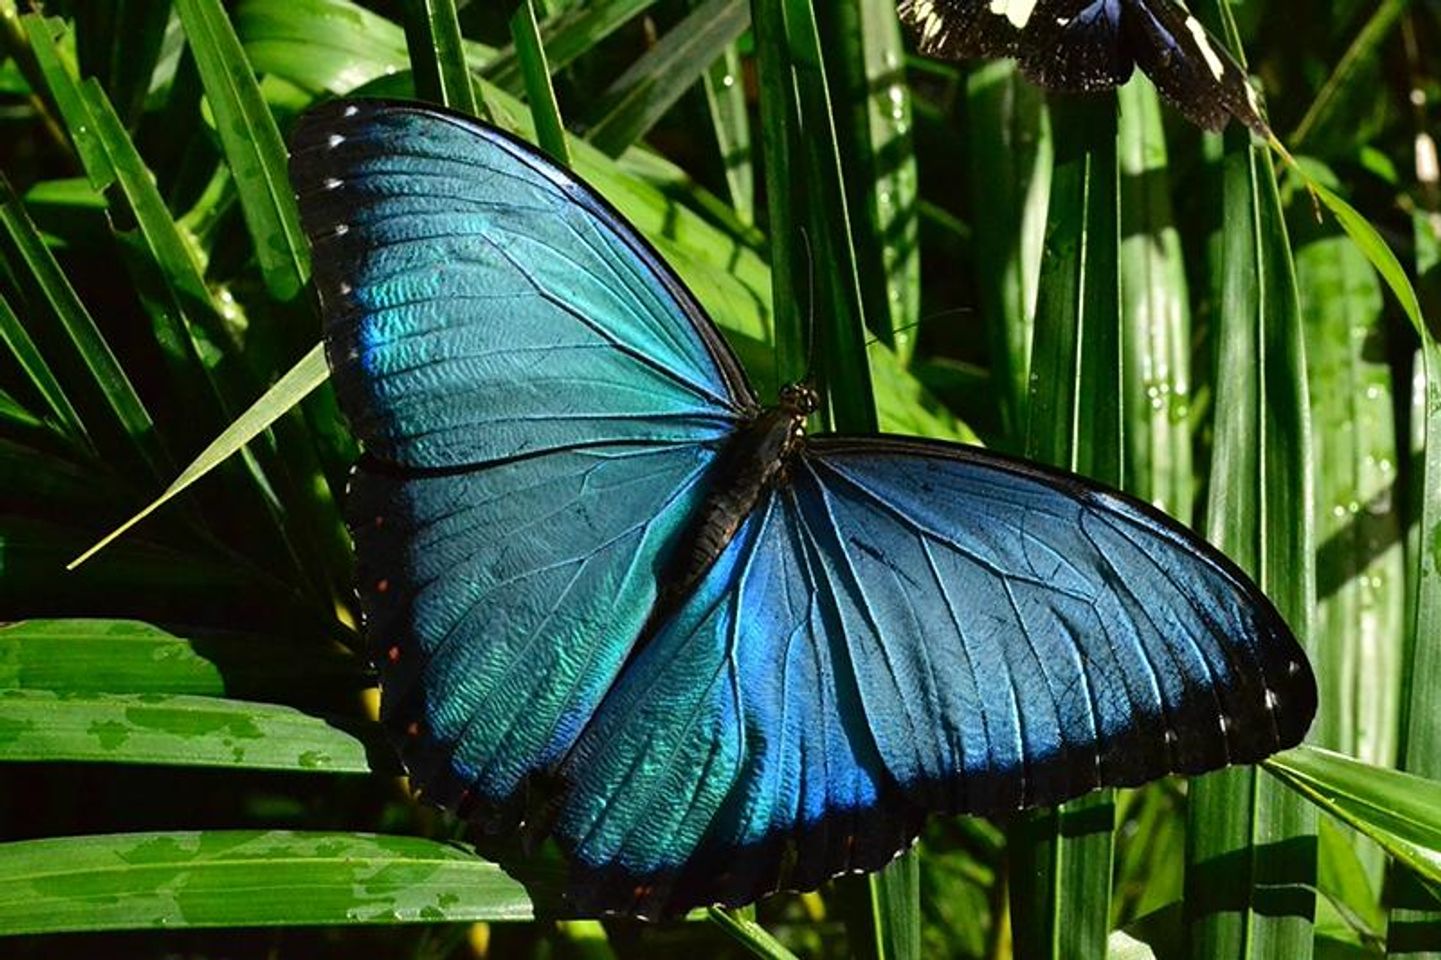 Entdecken Sie die bezaubernde Welt der Schmetterlinge von Mindo – ein Schmetterlingsparadies!